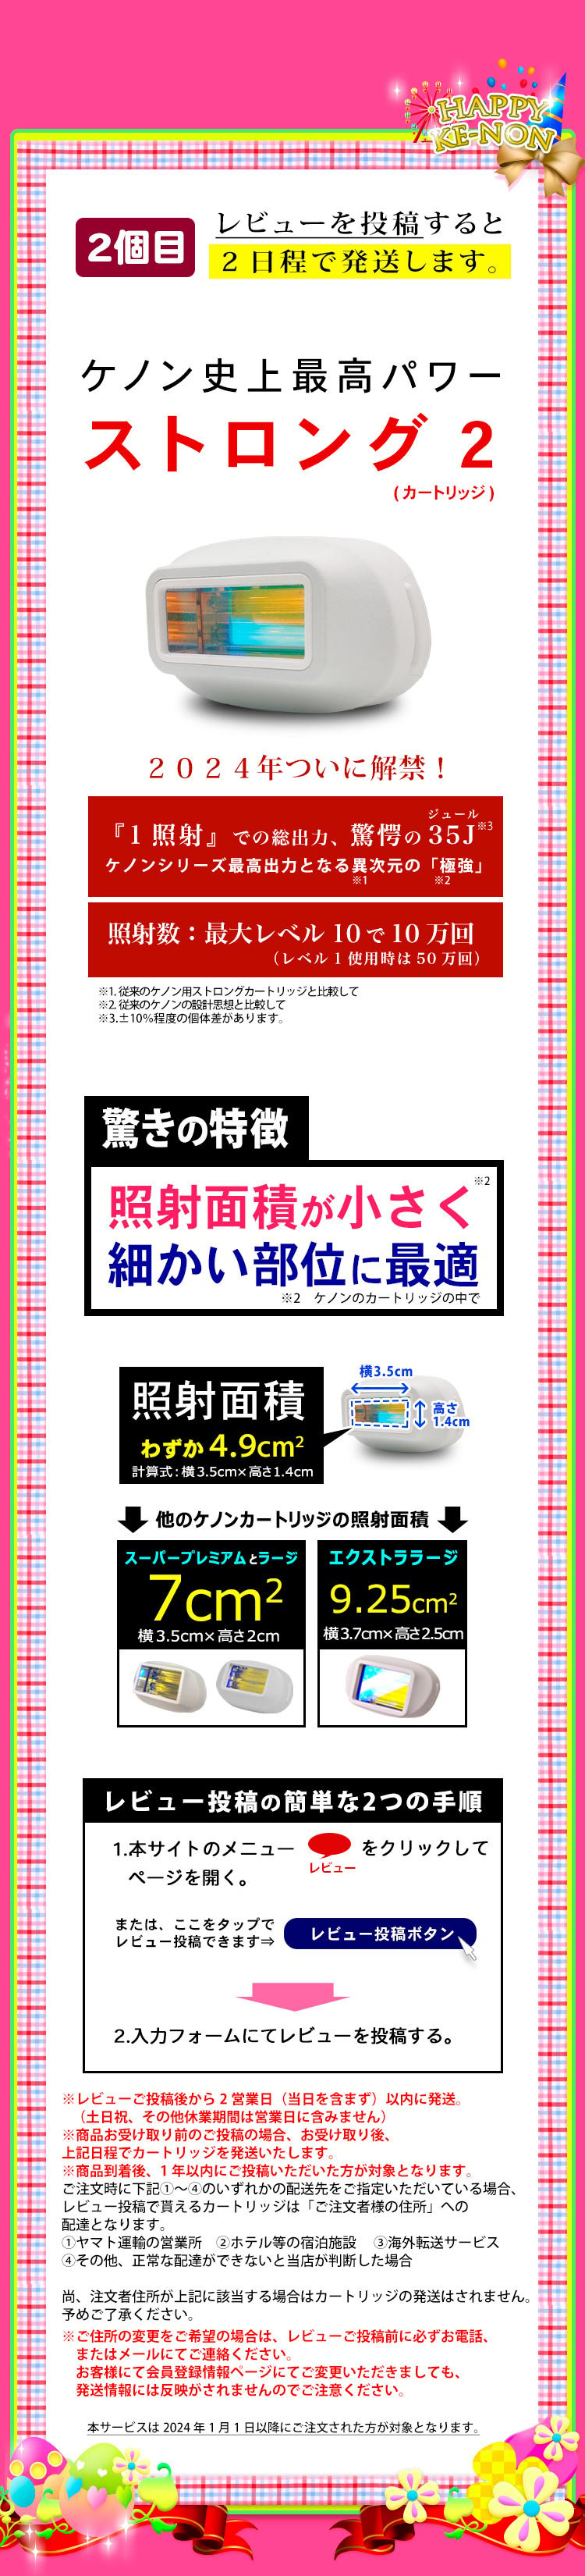 18000円 ケノン v7.1 2018.４月購入納品書有り 美容機器 www.real